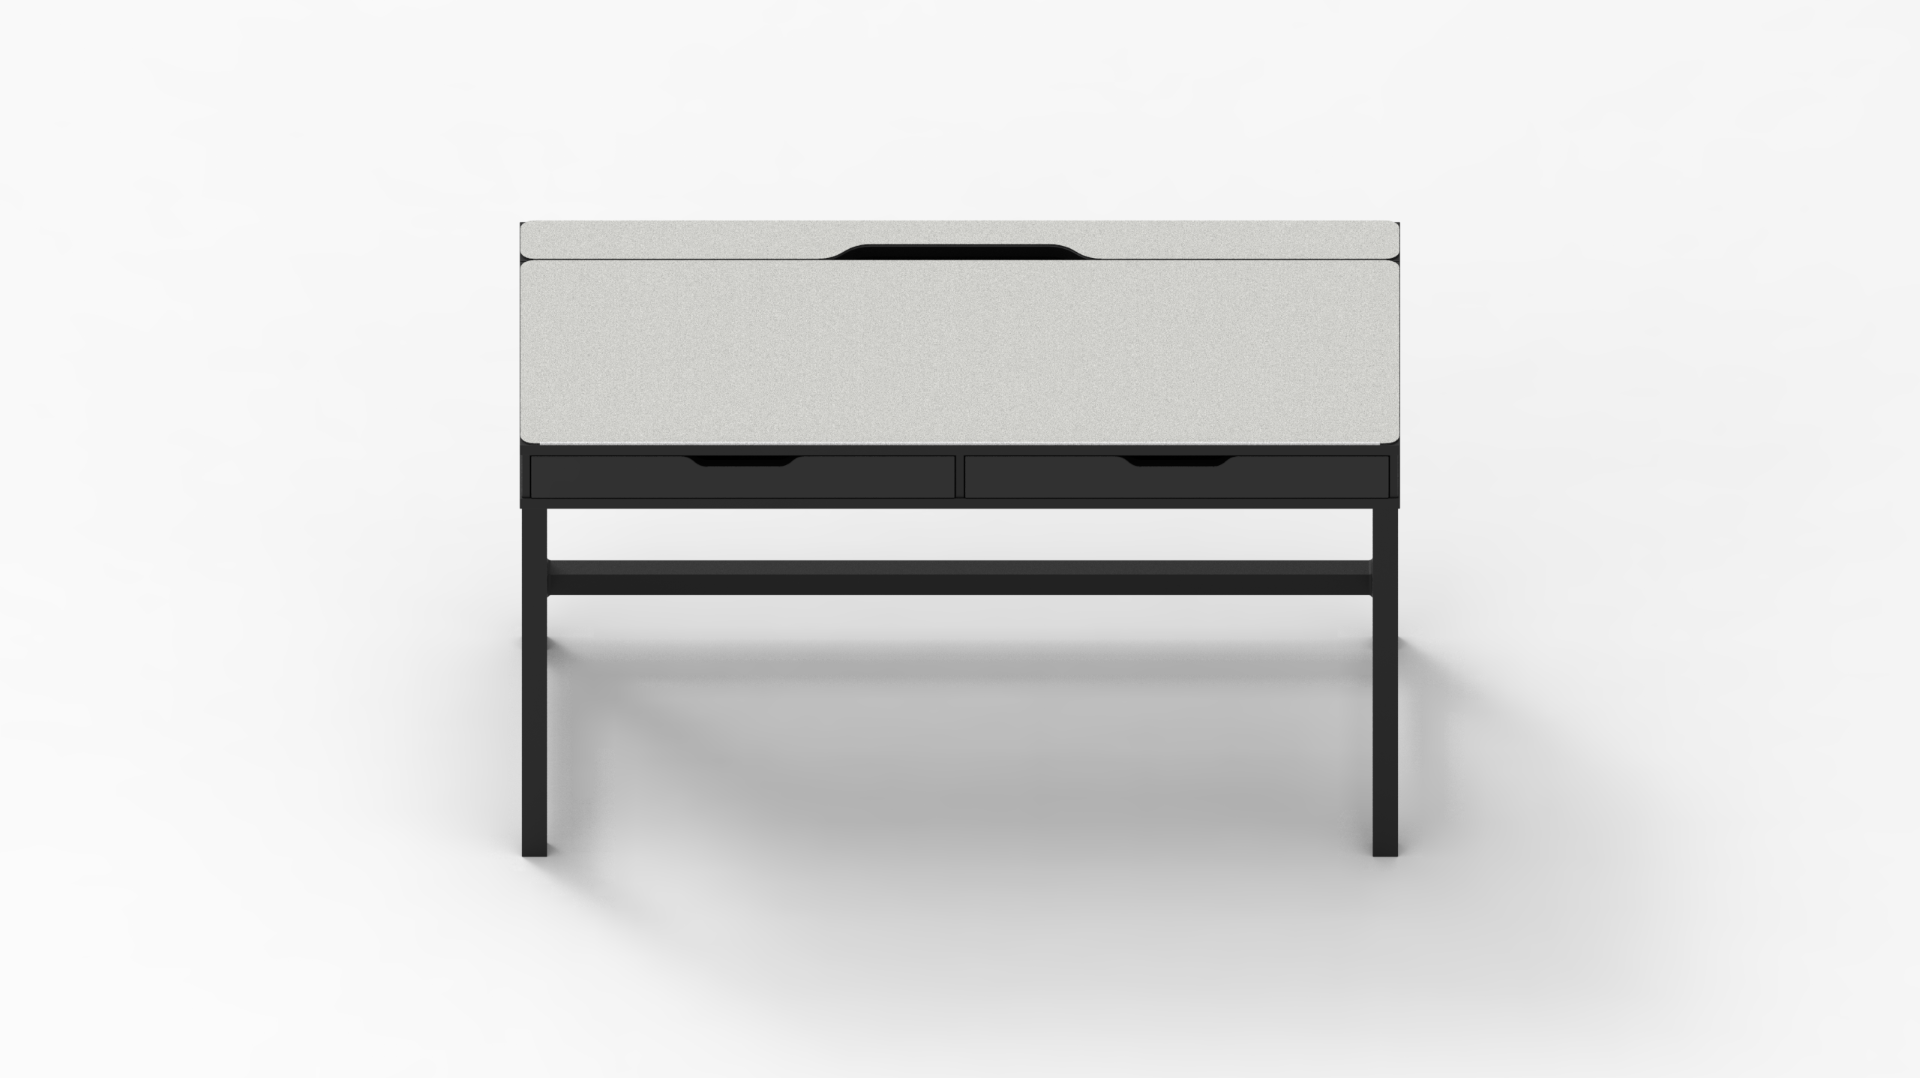 MK White IKEA ALEX Desk Mat (52" / 132 cm) Full-desk Mouse Pad MK9NGLRW91 |40170|